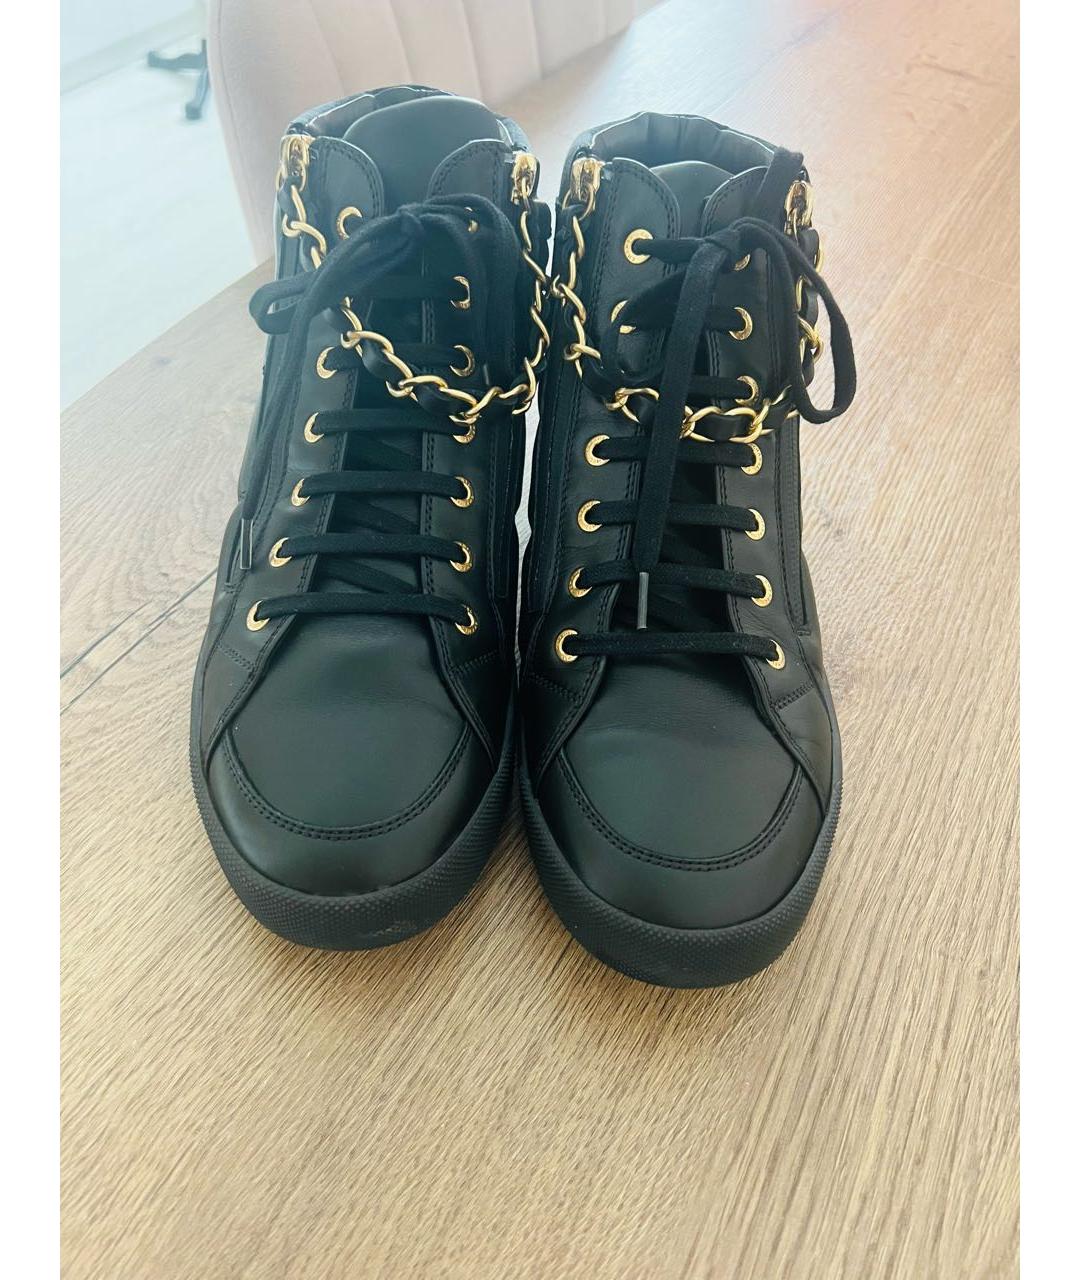 CHANEL PRE-OWNED Черные кожаные кроссовки, фото 2